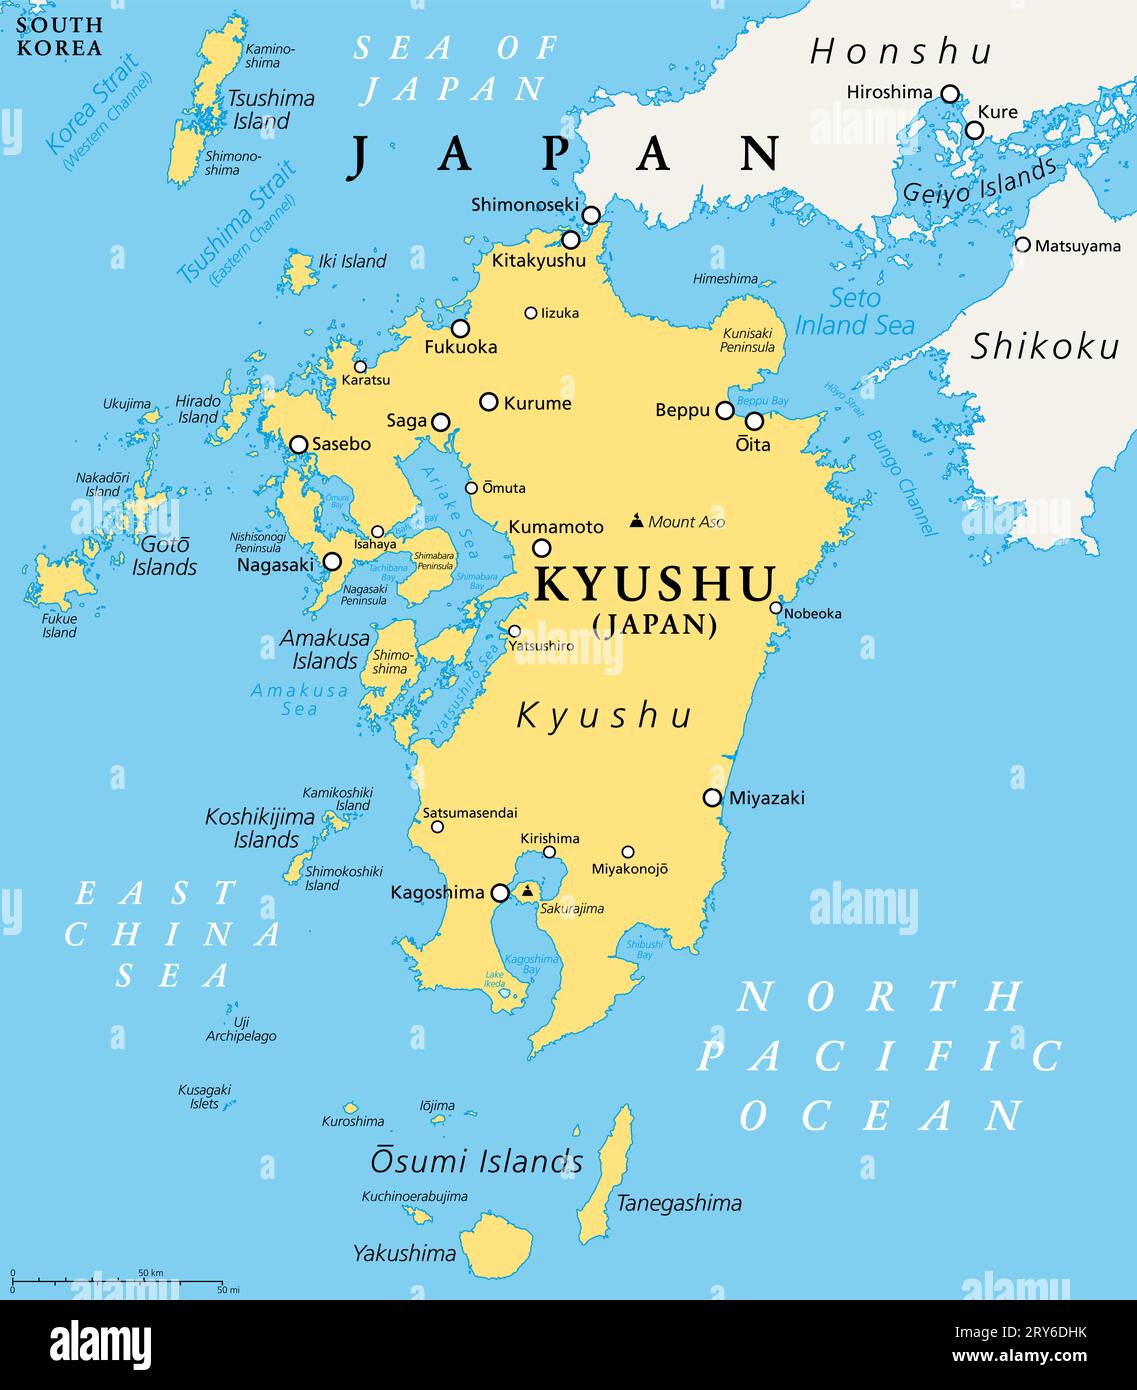 Kyushu, politische Karte. Region von Japan und eine von fünf Hauptinseln südwestlich von Honshu und Shikoku, getrennt durch Seto Inland Sea. Stockfoto